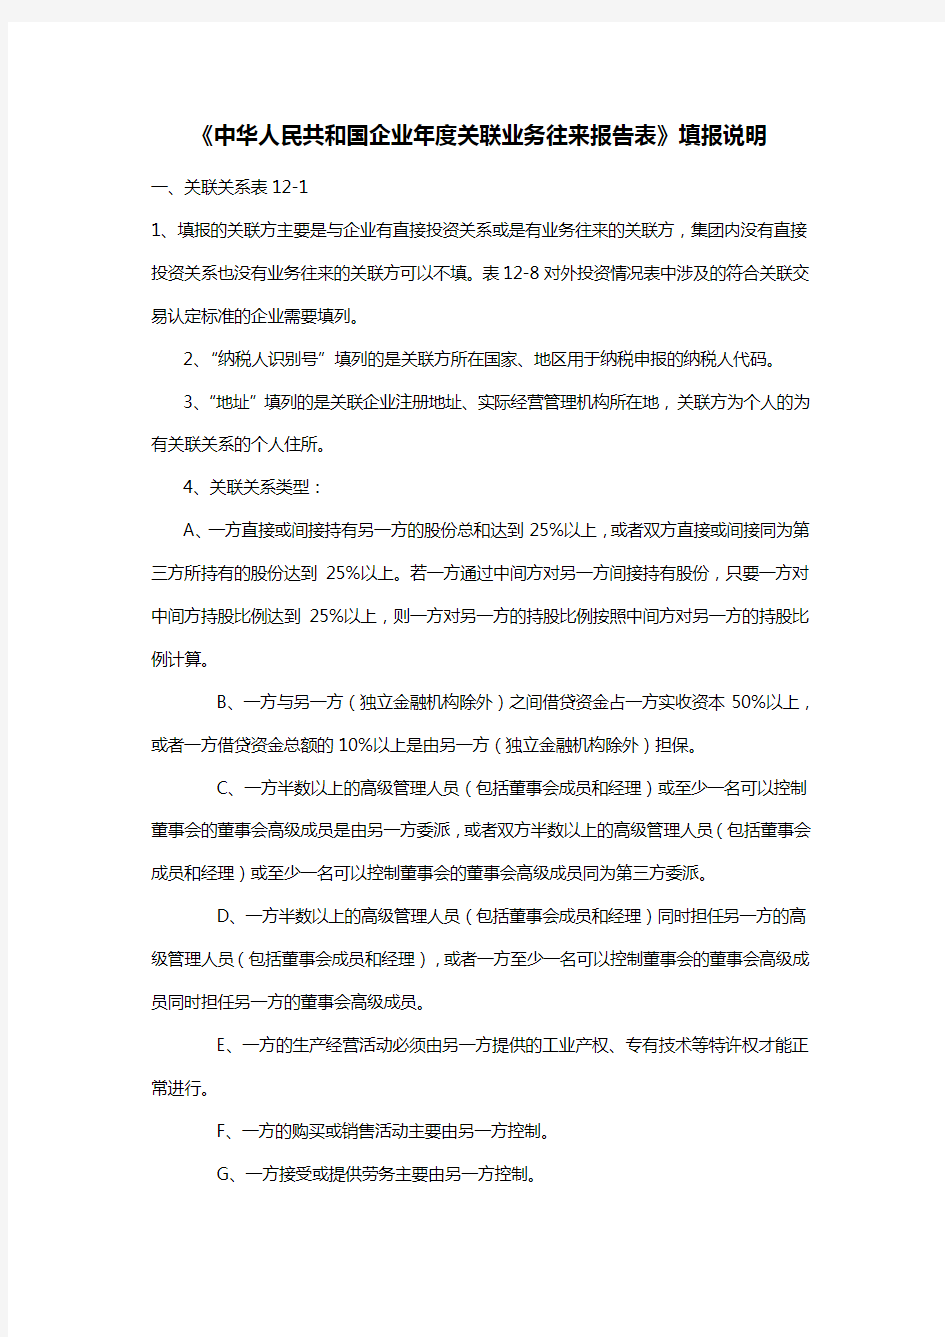 《中华人民共和国企业年度关联业务往来报告表》填报说明